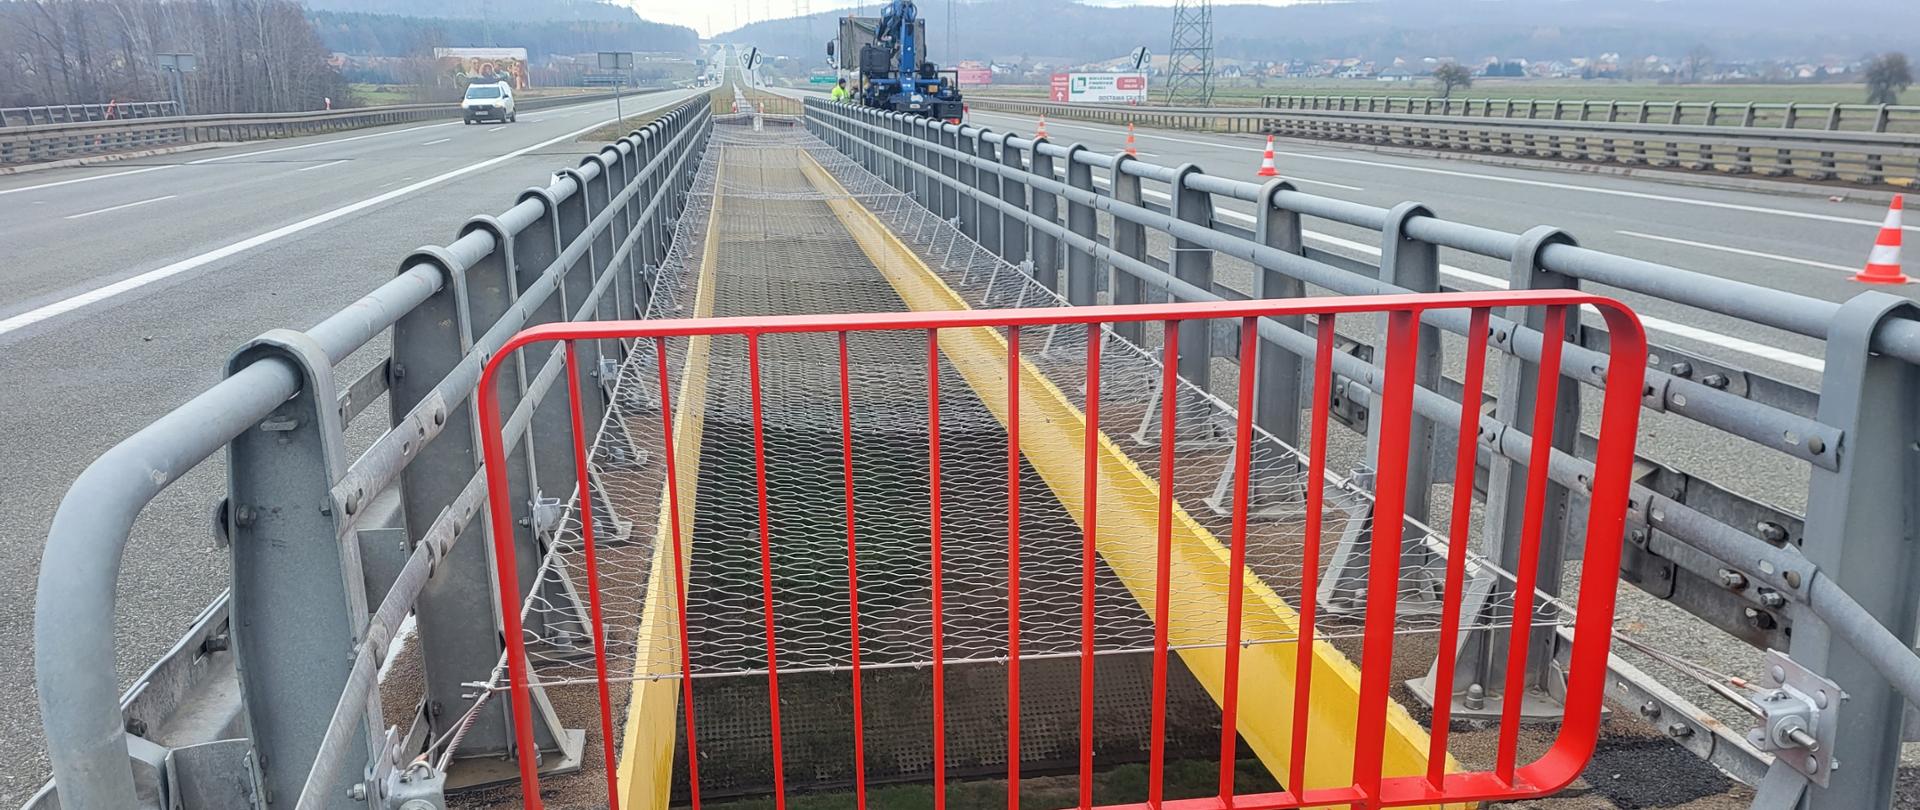 Zabezpieczenia obiektów mostowych - siatka zamontowana na prześwicie między dwoma wiaduktami po których biegną jezdnie drogi ekspresowej